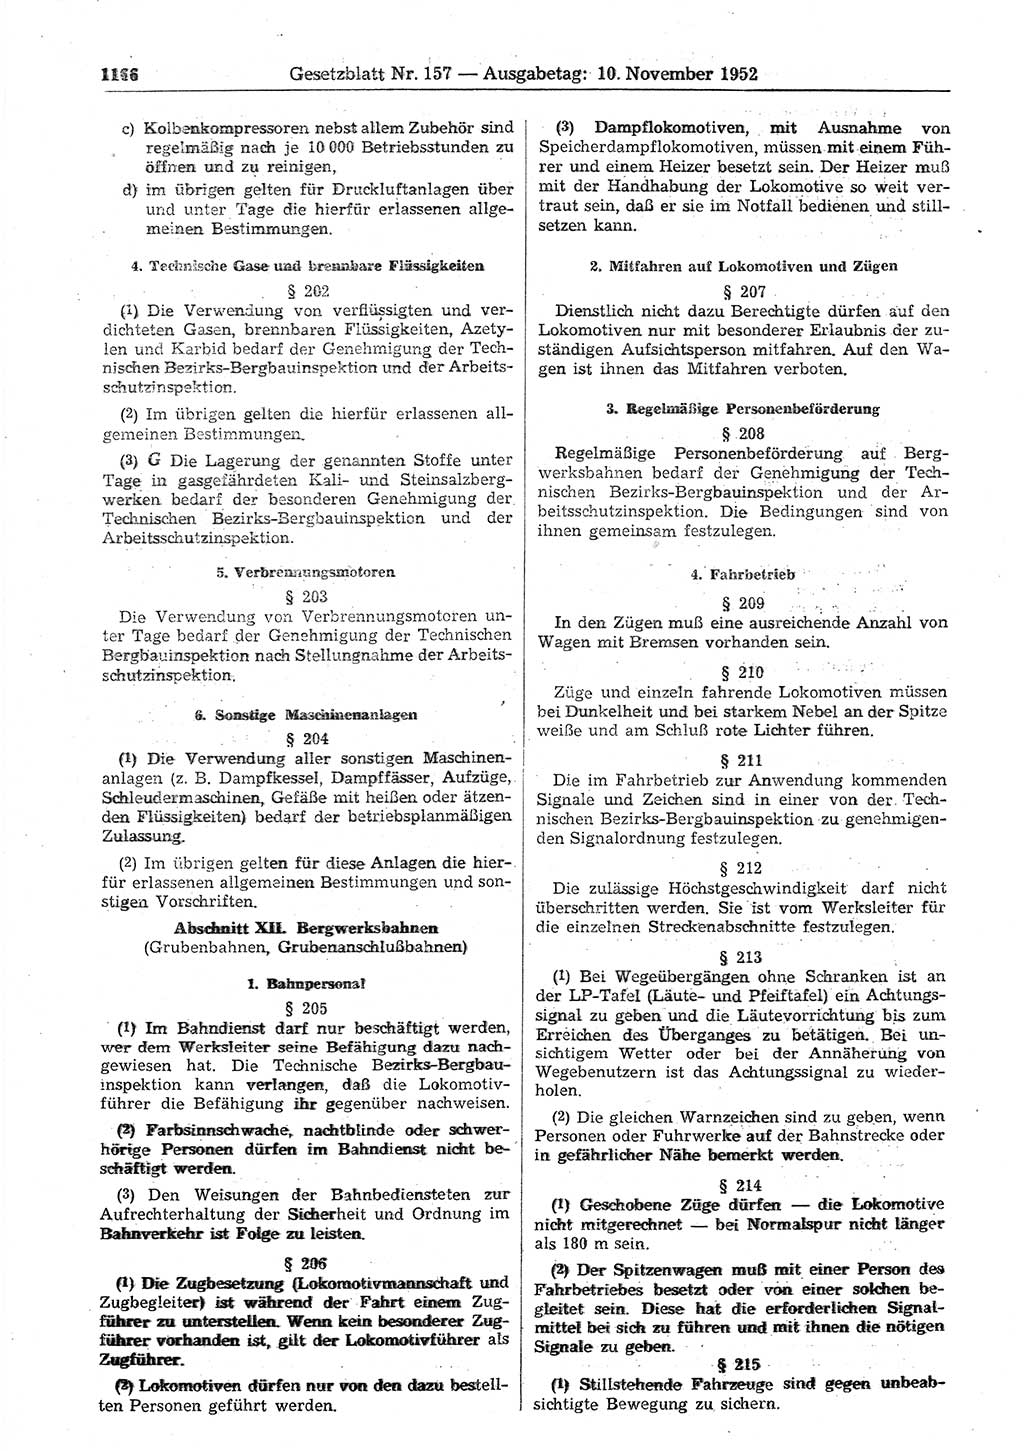 Gesetzblatt (GBl.) der Deutschen Demokratischen Republik (DDR) 1952, Seite 1166 (GBl. DDR 1952, S. 1166)